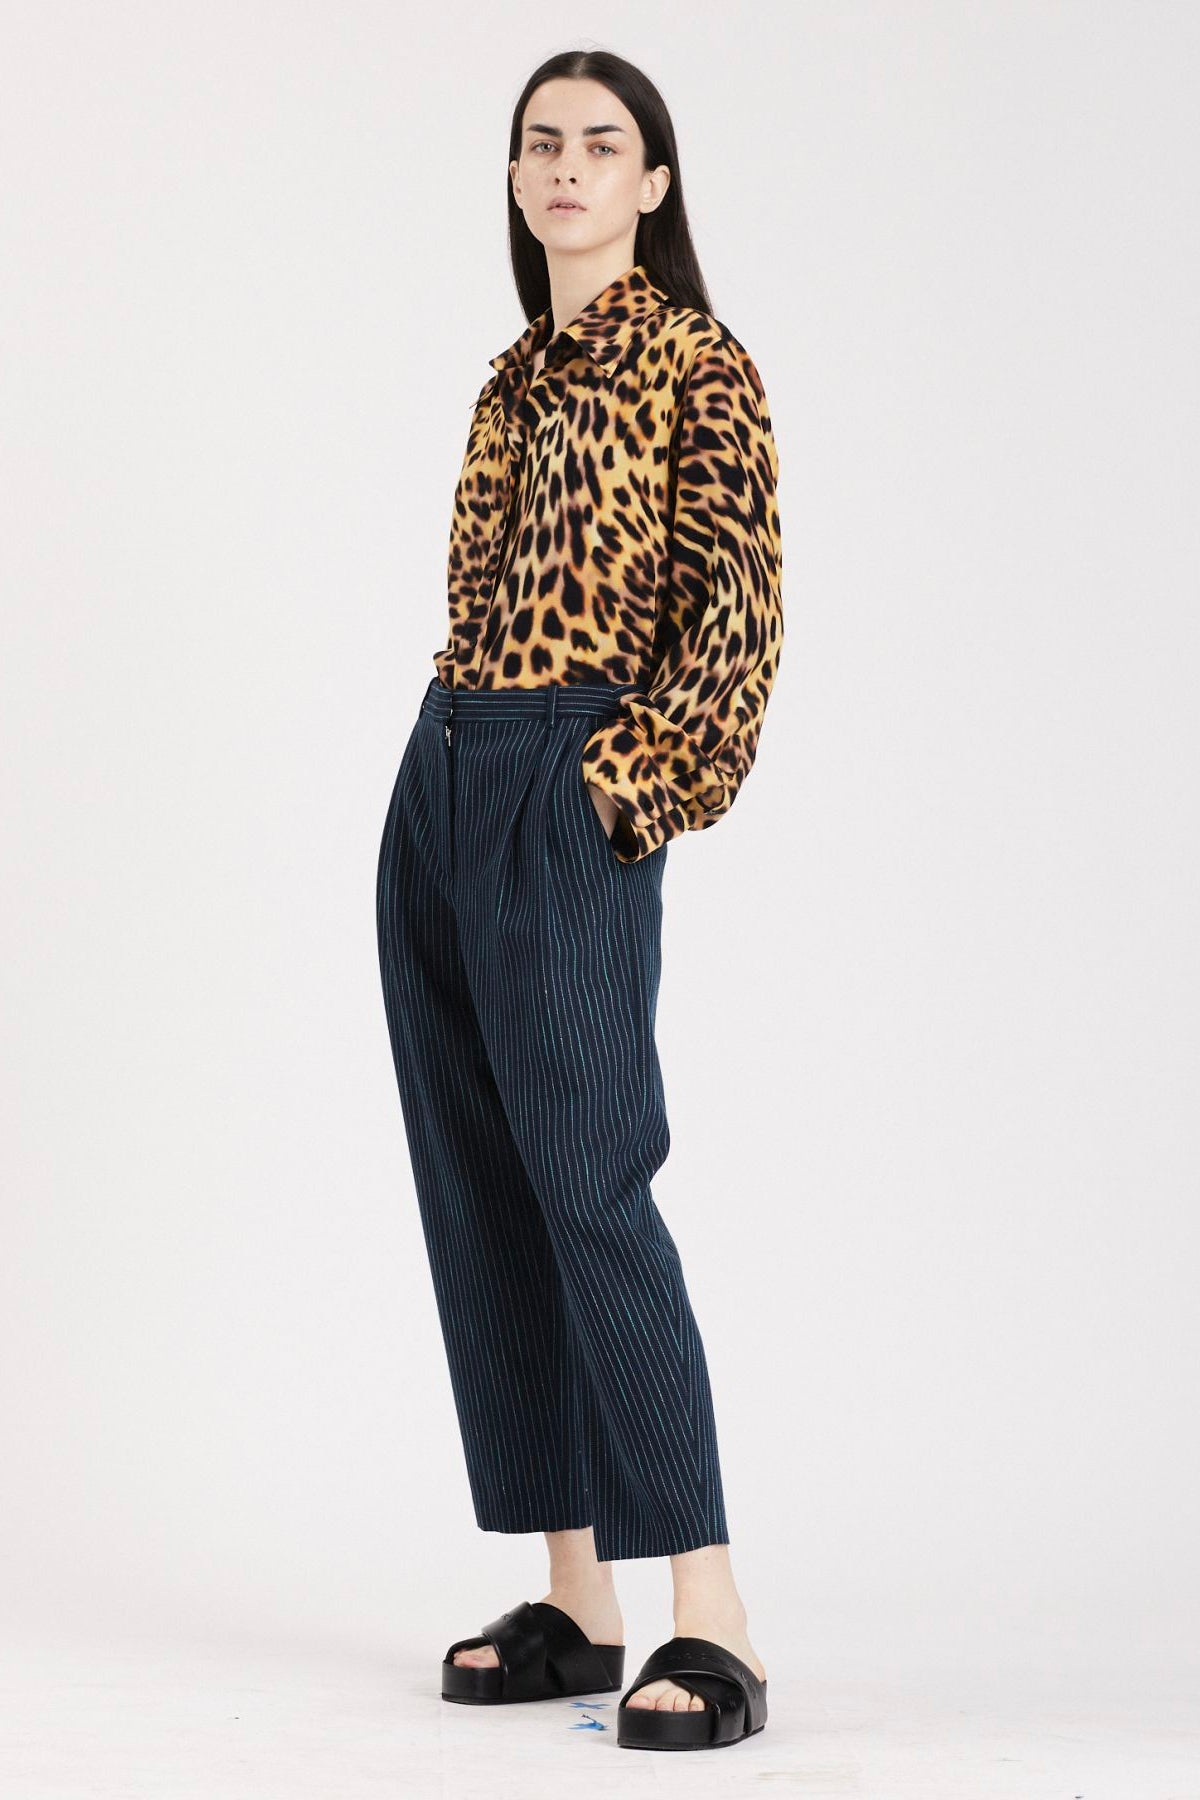 Stella McCartney Cheetah Print Silk Collared Shirt - Tortoiseshell